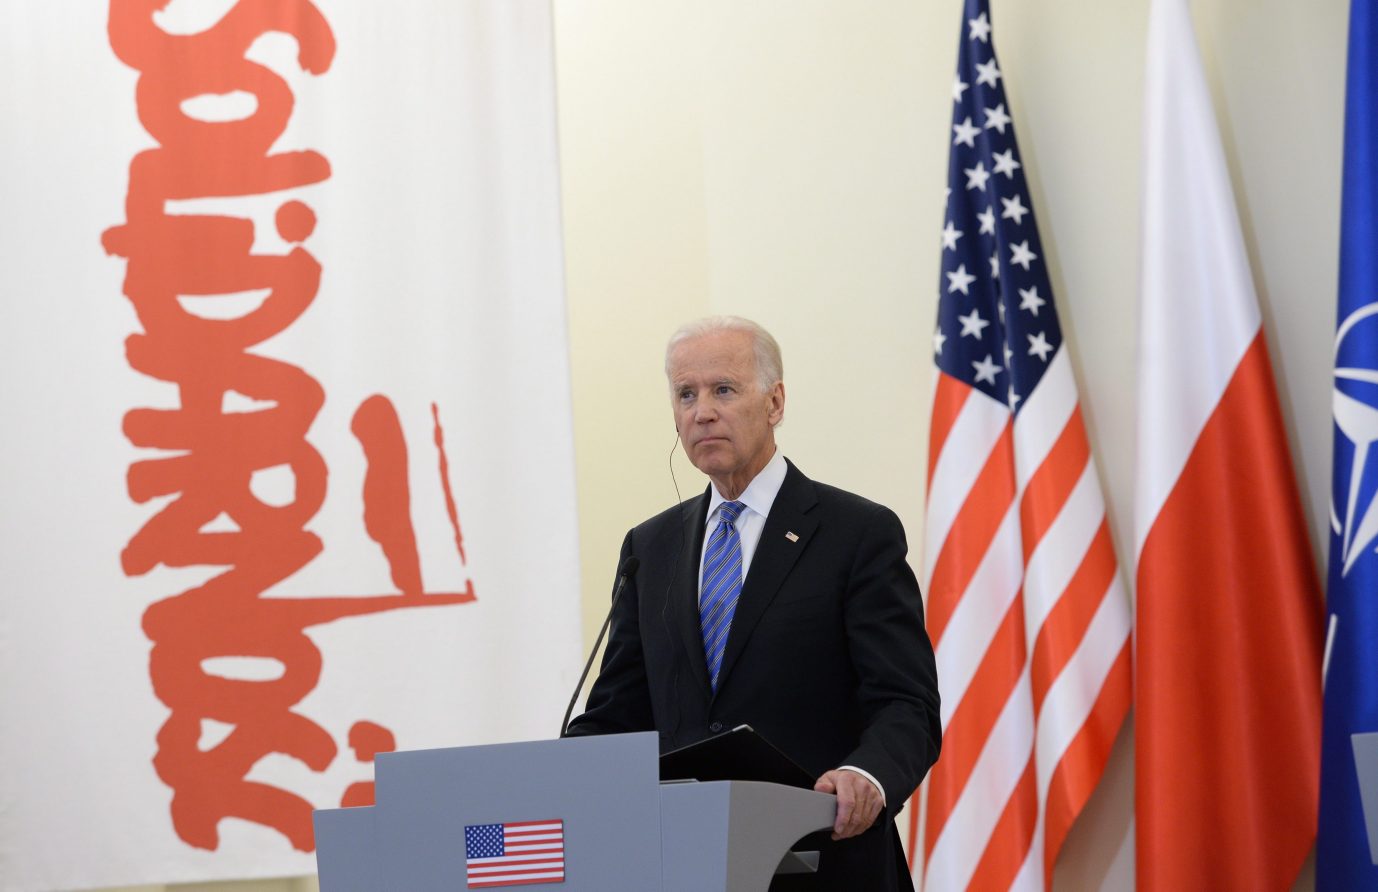 US-Präsident Joe Biden ließ beim Besuch in Warschau aufhorchen Foto: picture alliance / dpa | Jacek Turczyk